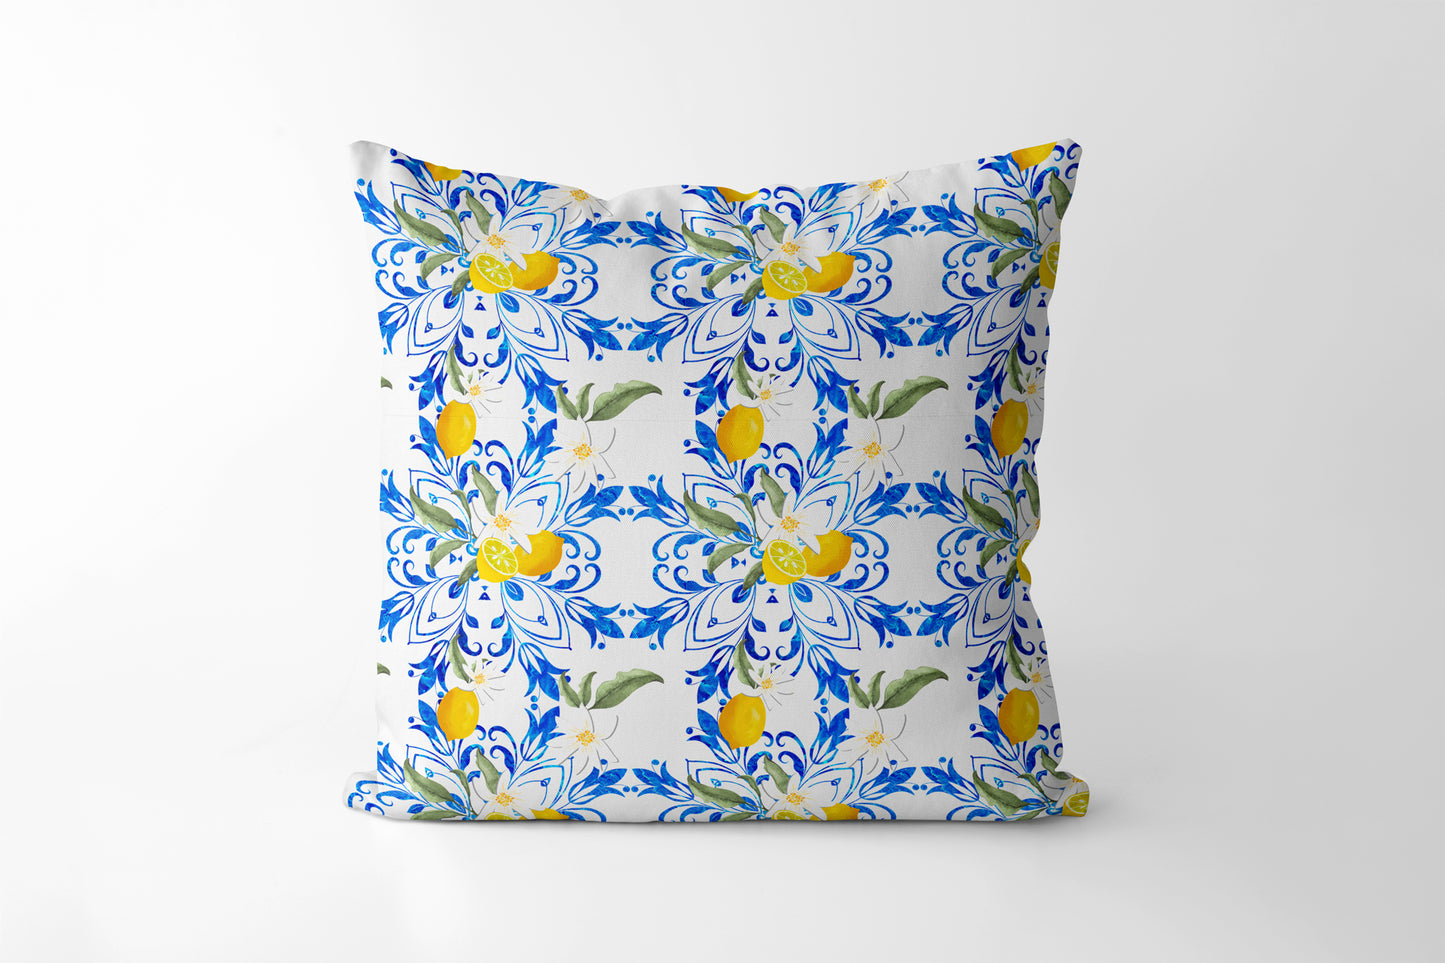 Citrus Floral Mediterranean Style lemon Fruit Square Cushion